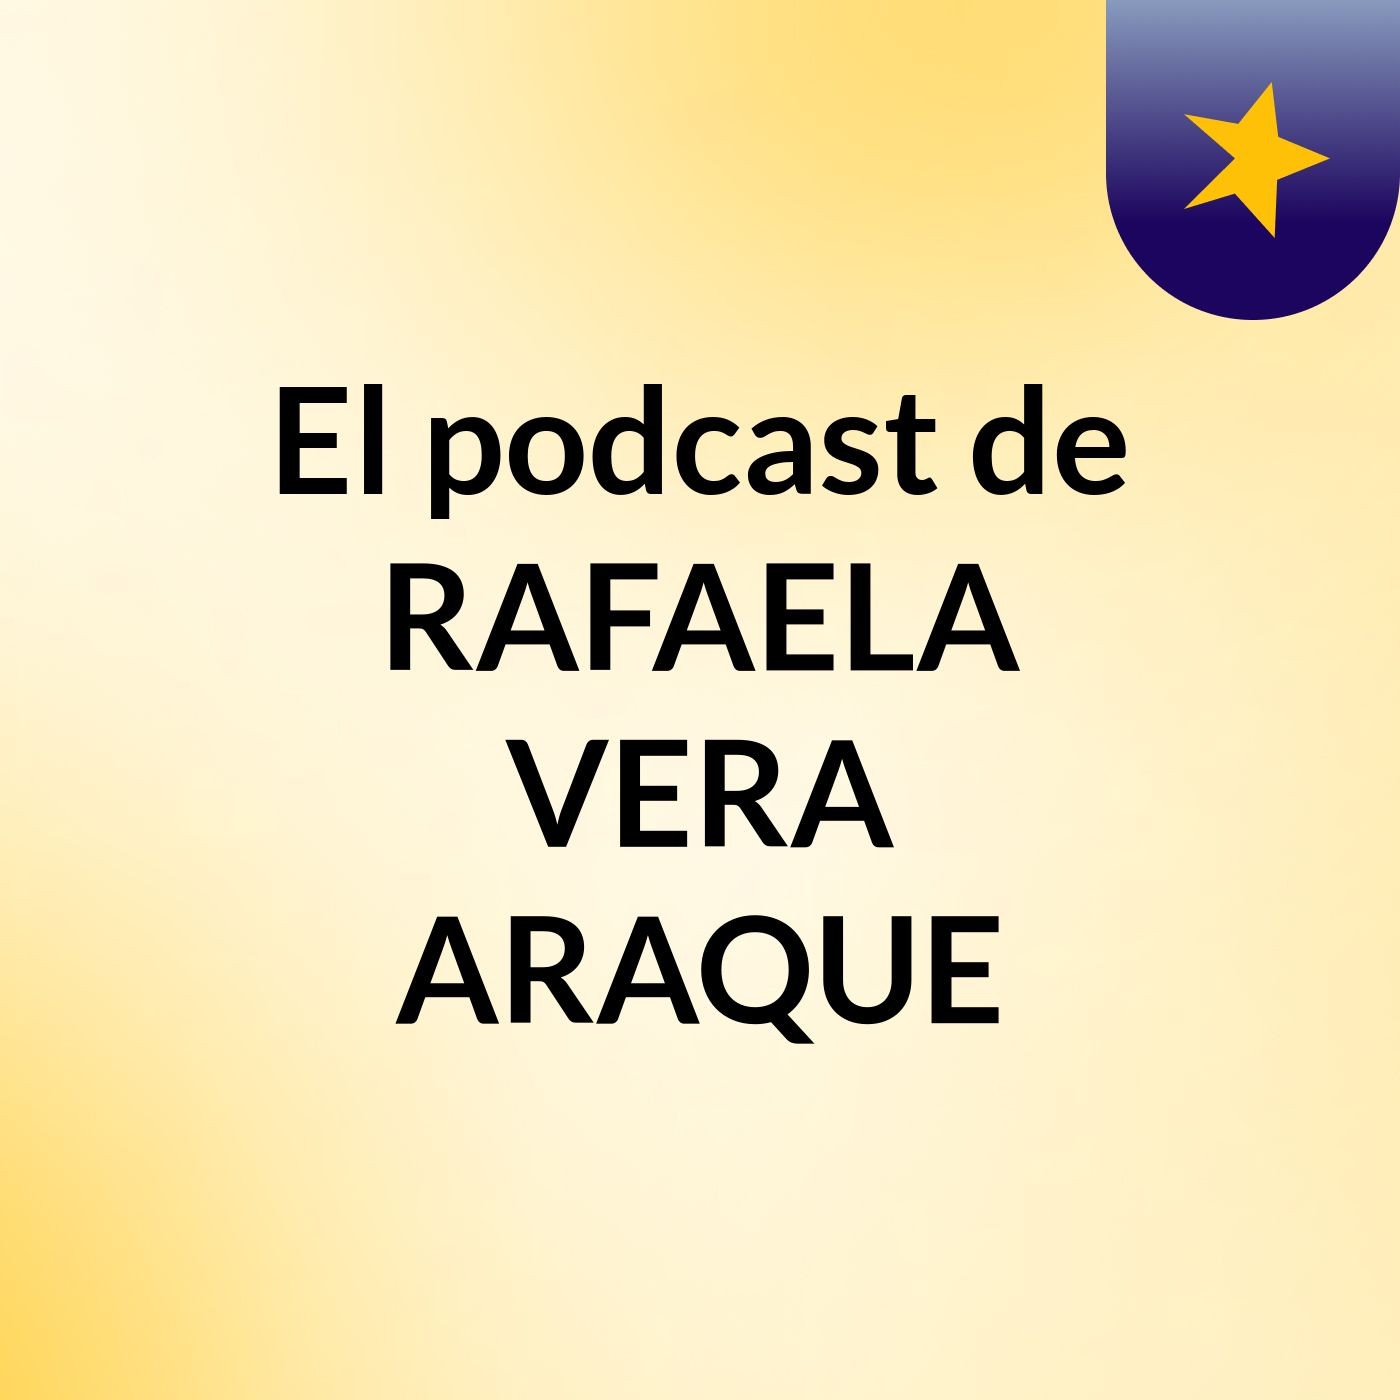 El podcast de RAFAELA VERA ARAQUE